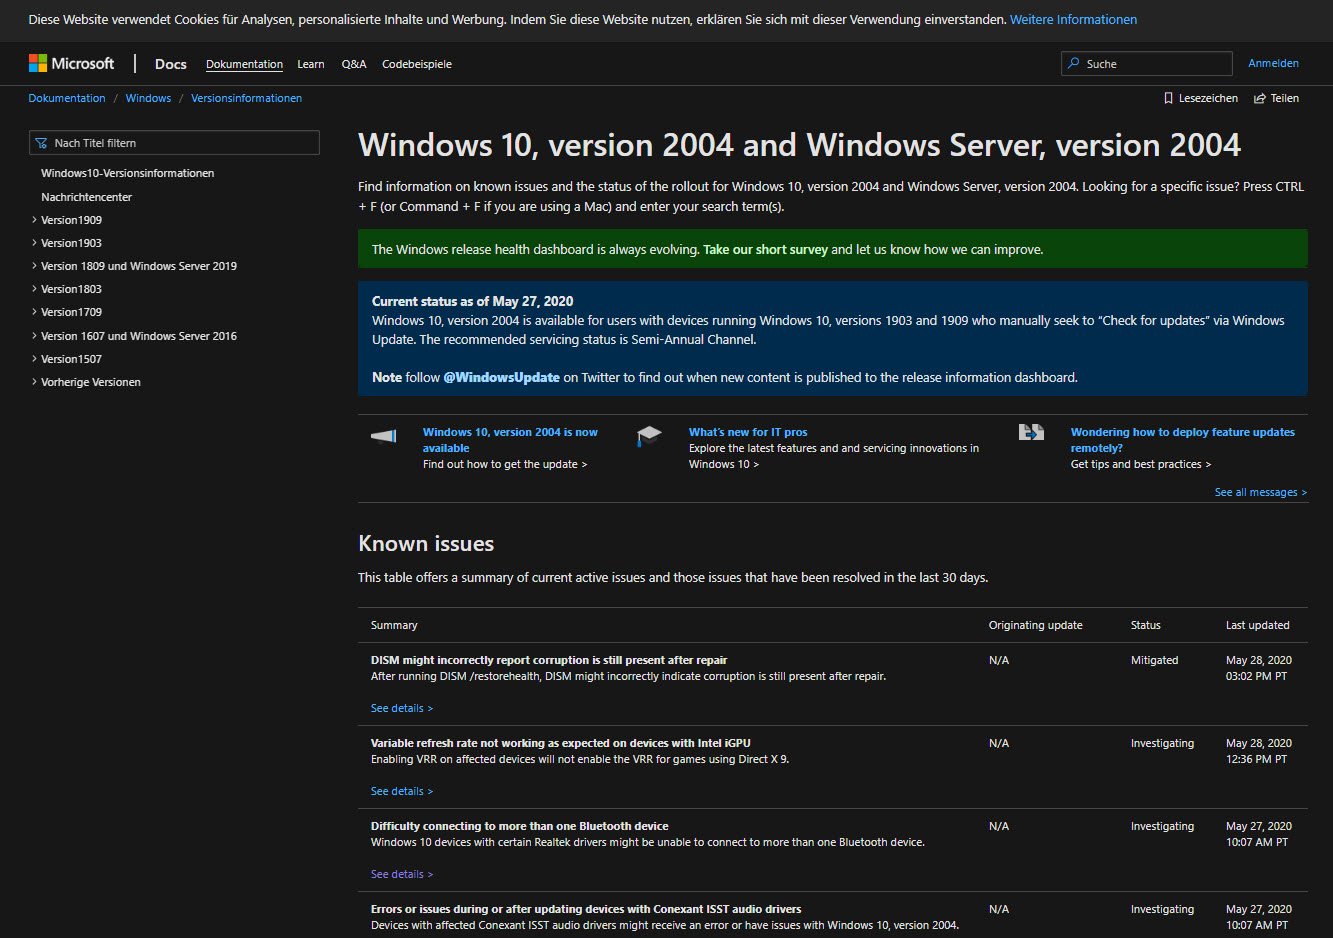 Bekannte Probleme durch Windows 10 2004